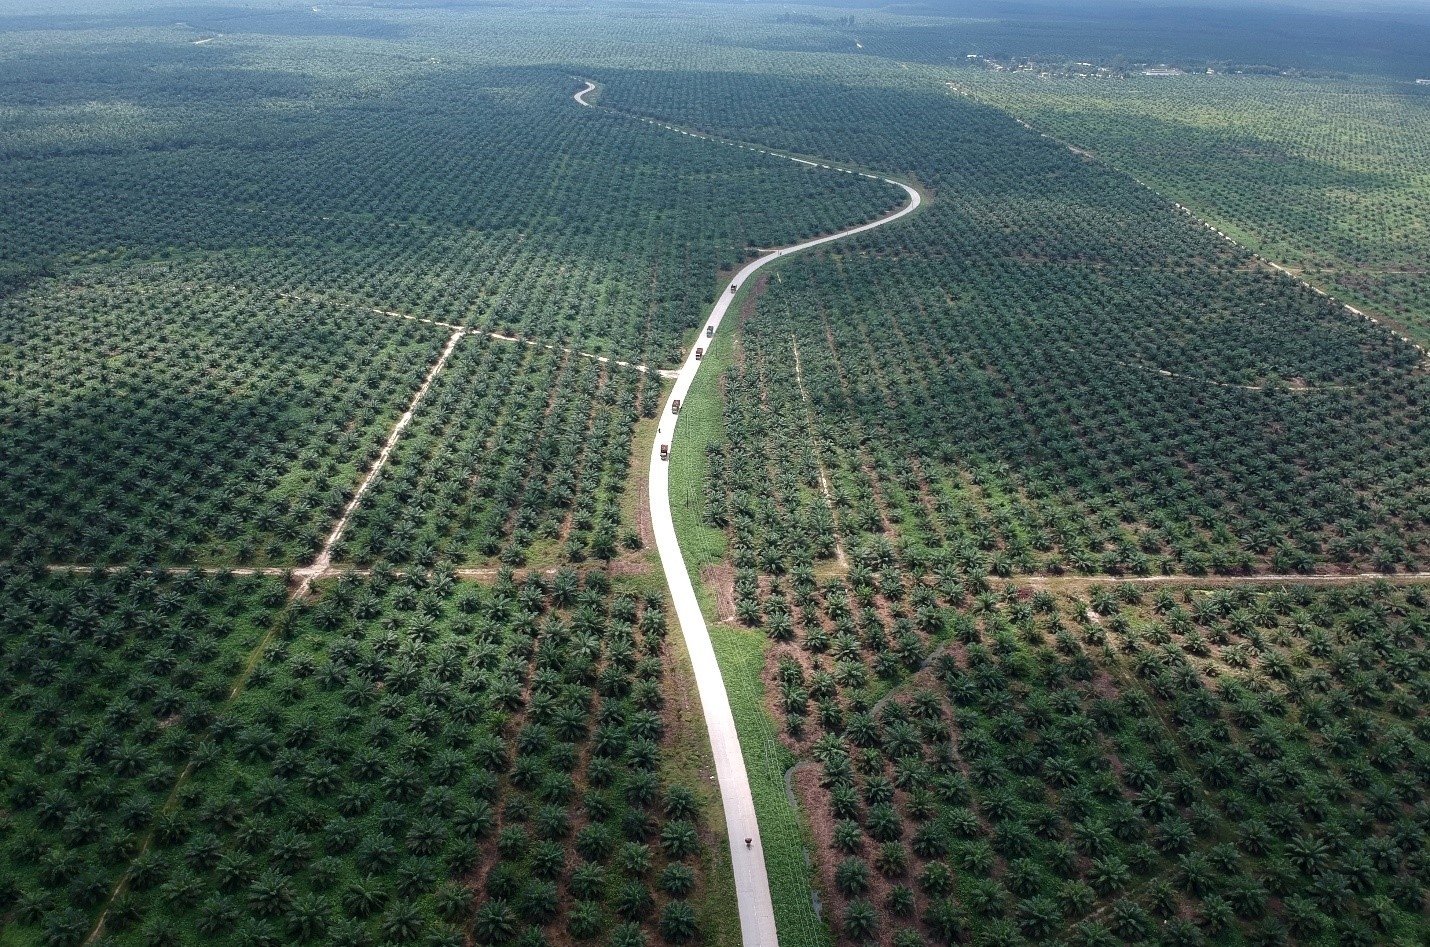 Phá rừng để sản xuất dầu cọ ở Indonesia: Liệu đây có phải là cách tiếp cận đúng đắn?